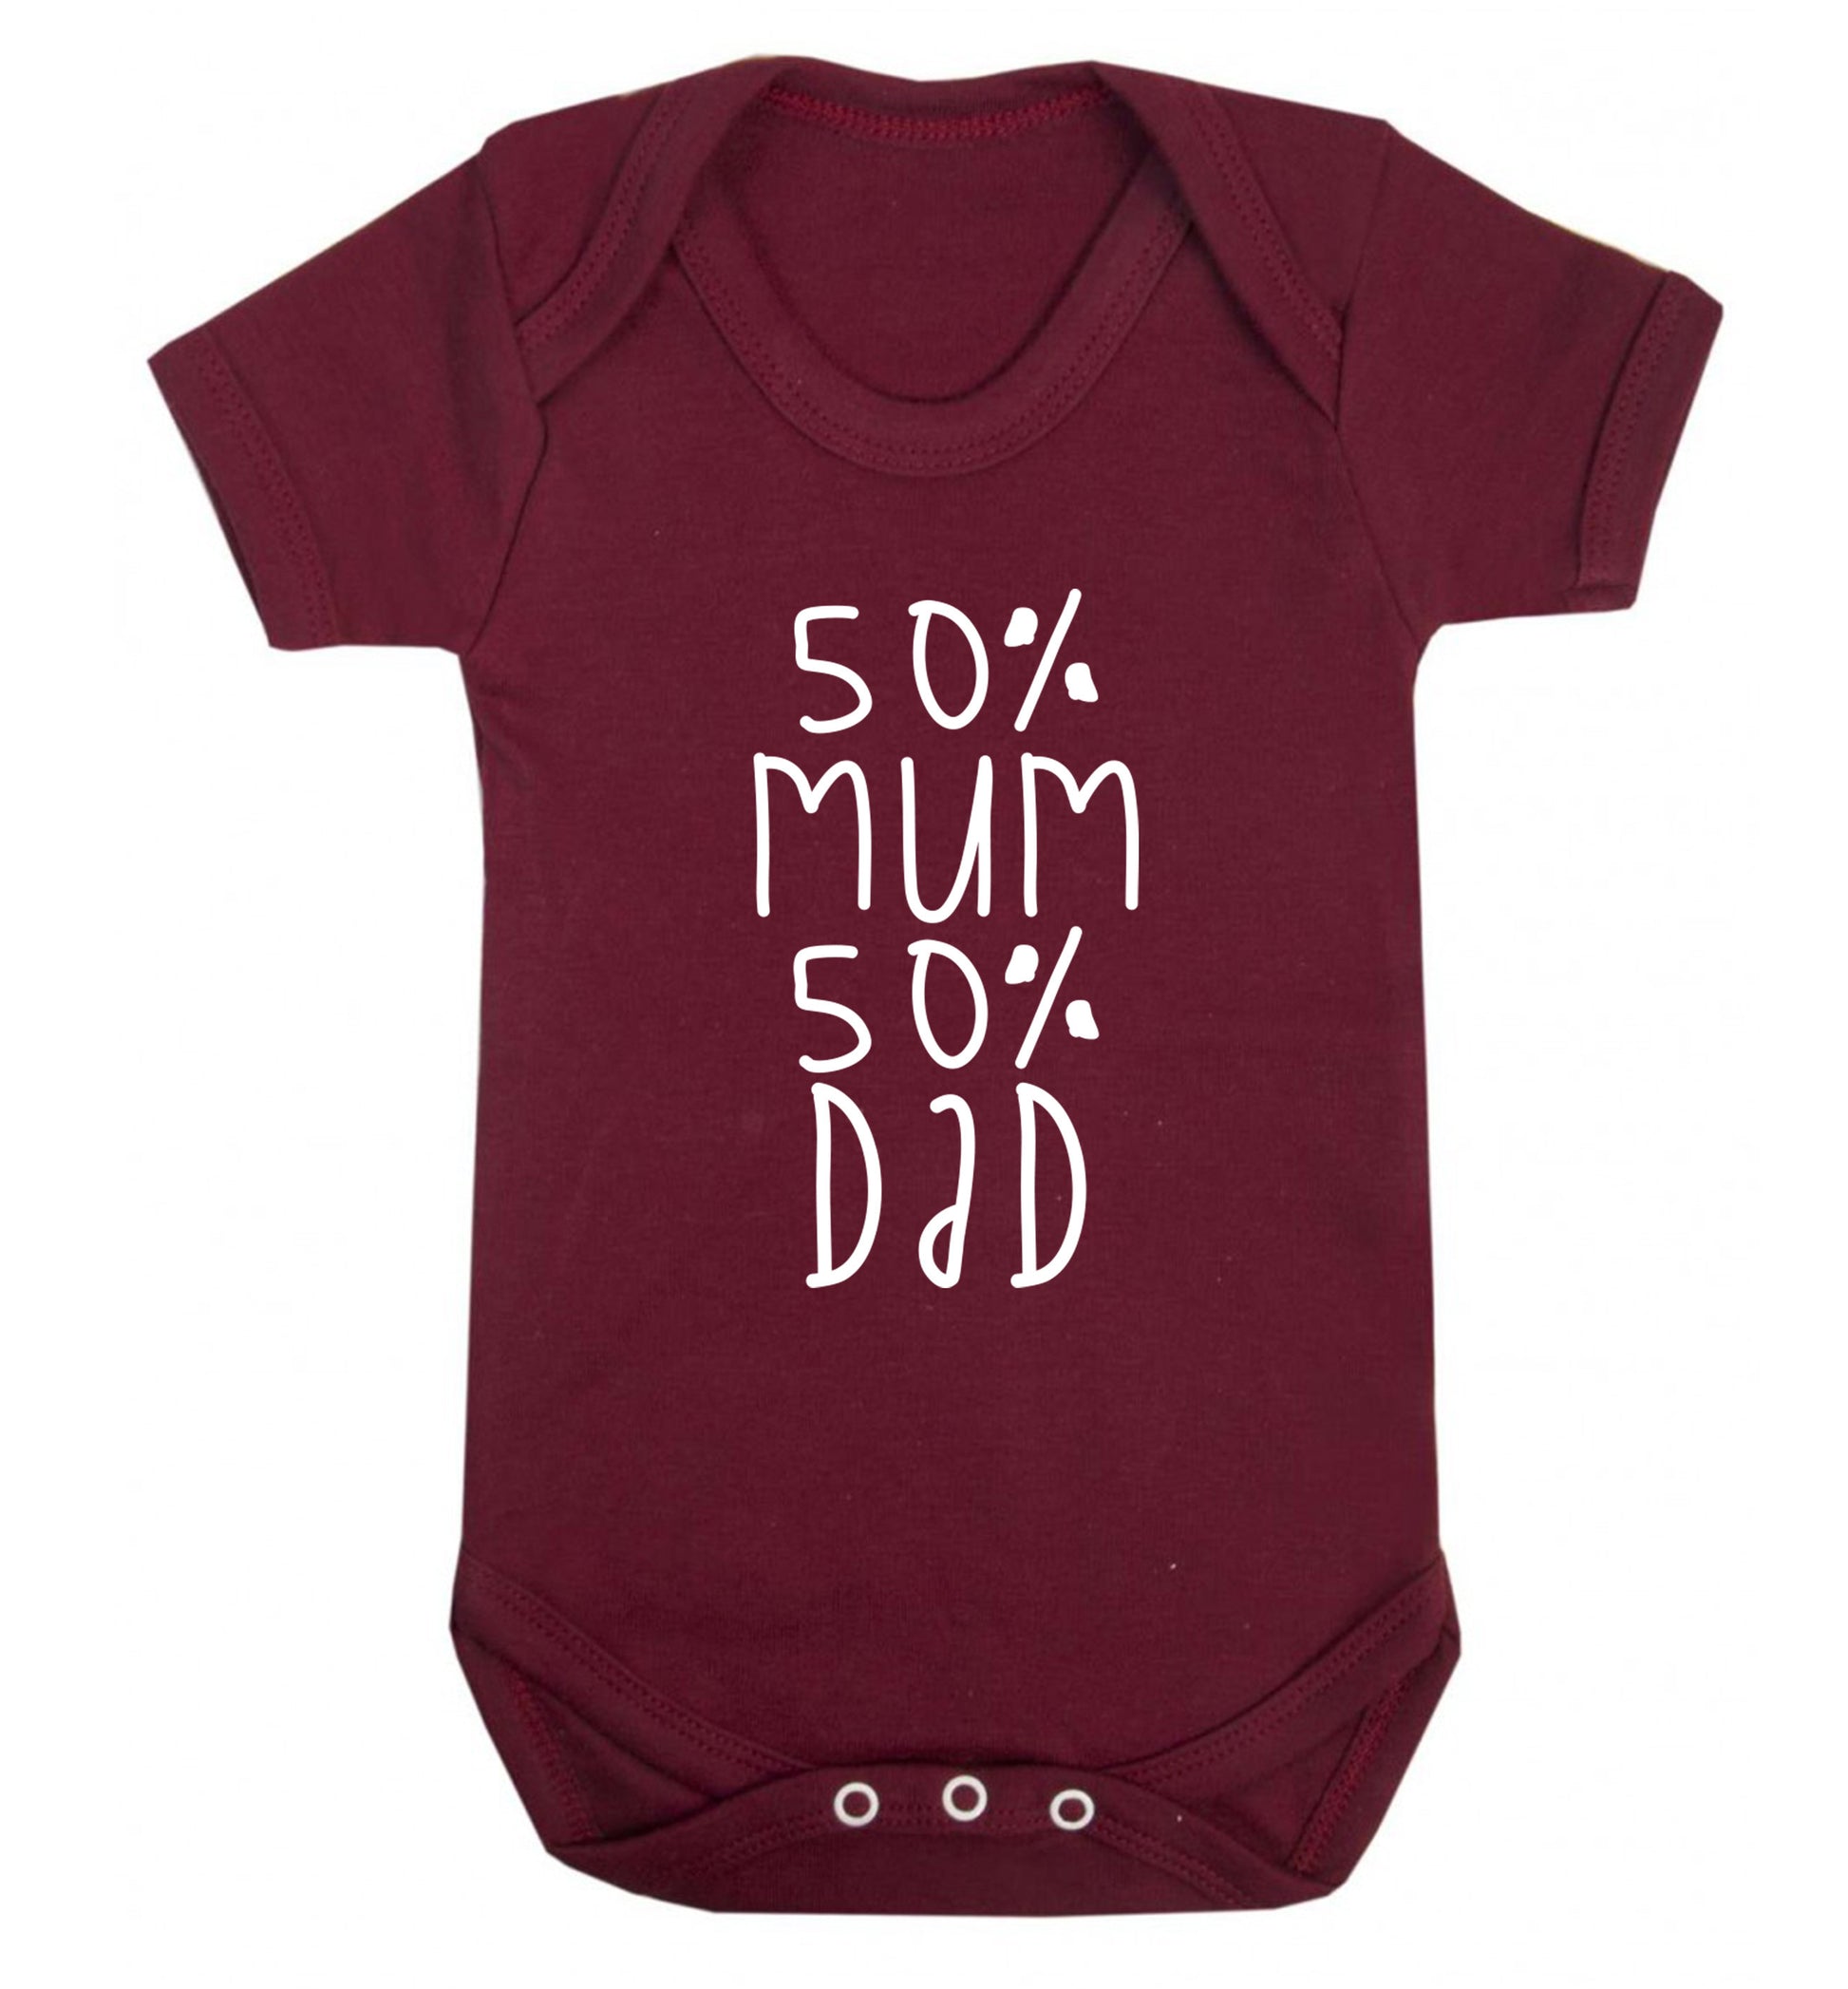 50% mum 50% dad Baby Vest maroon 18-24 months